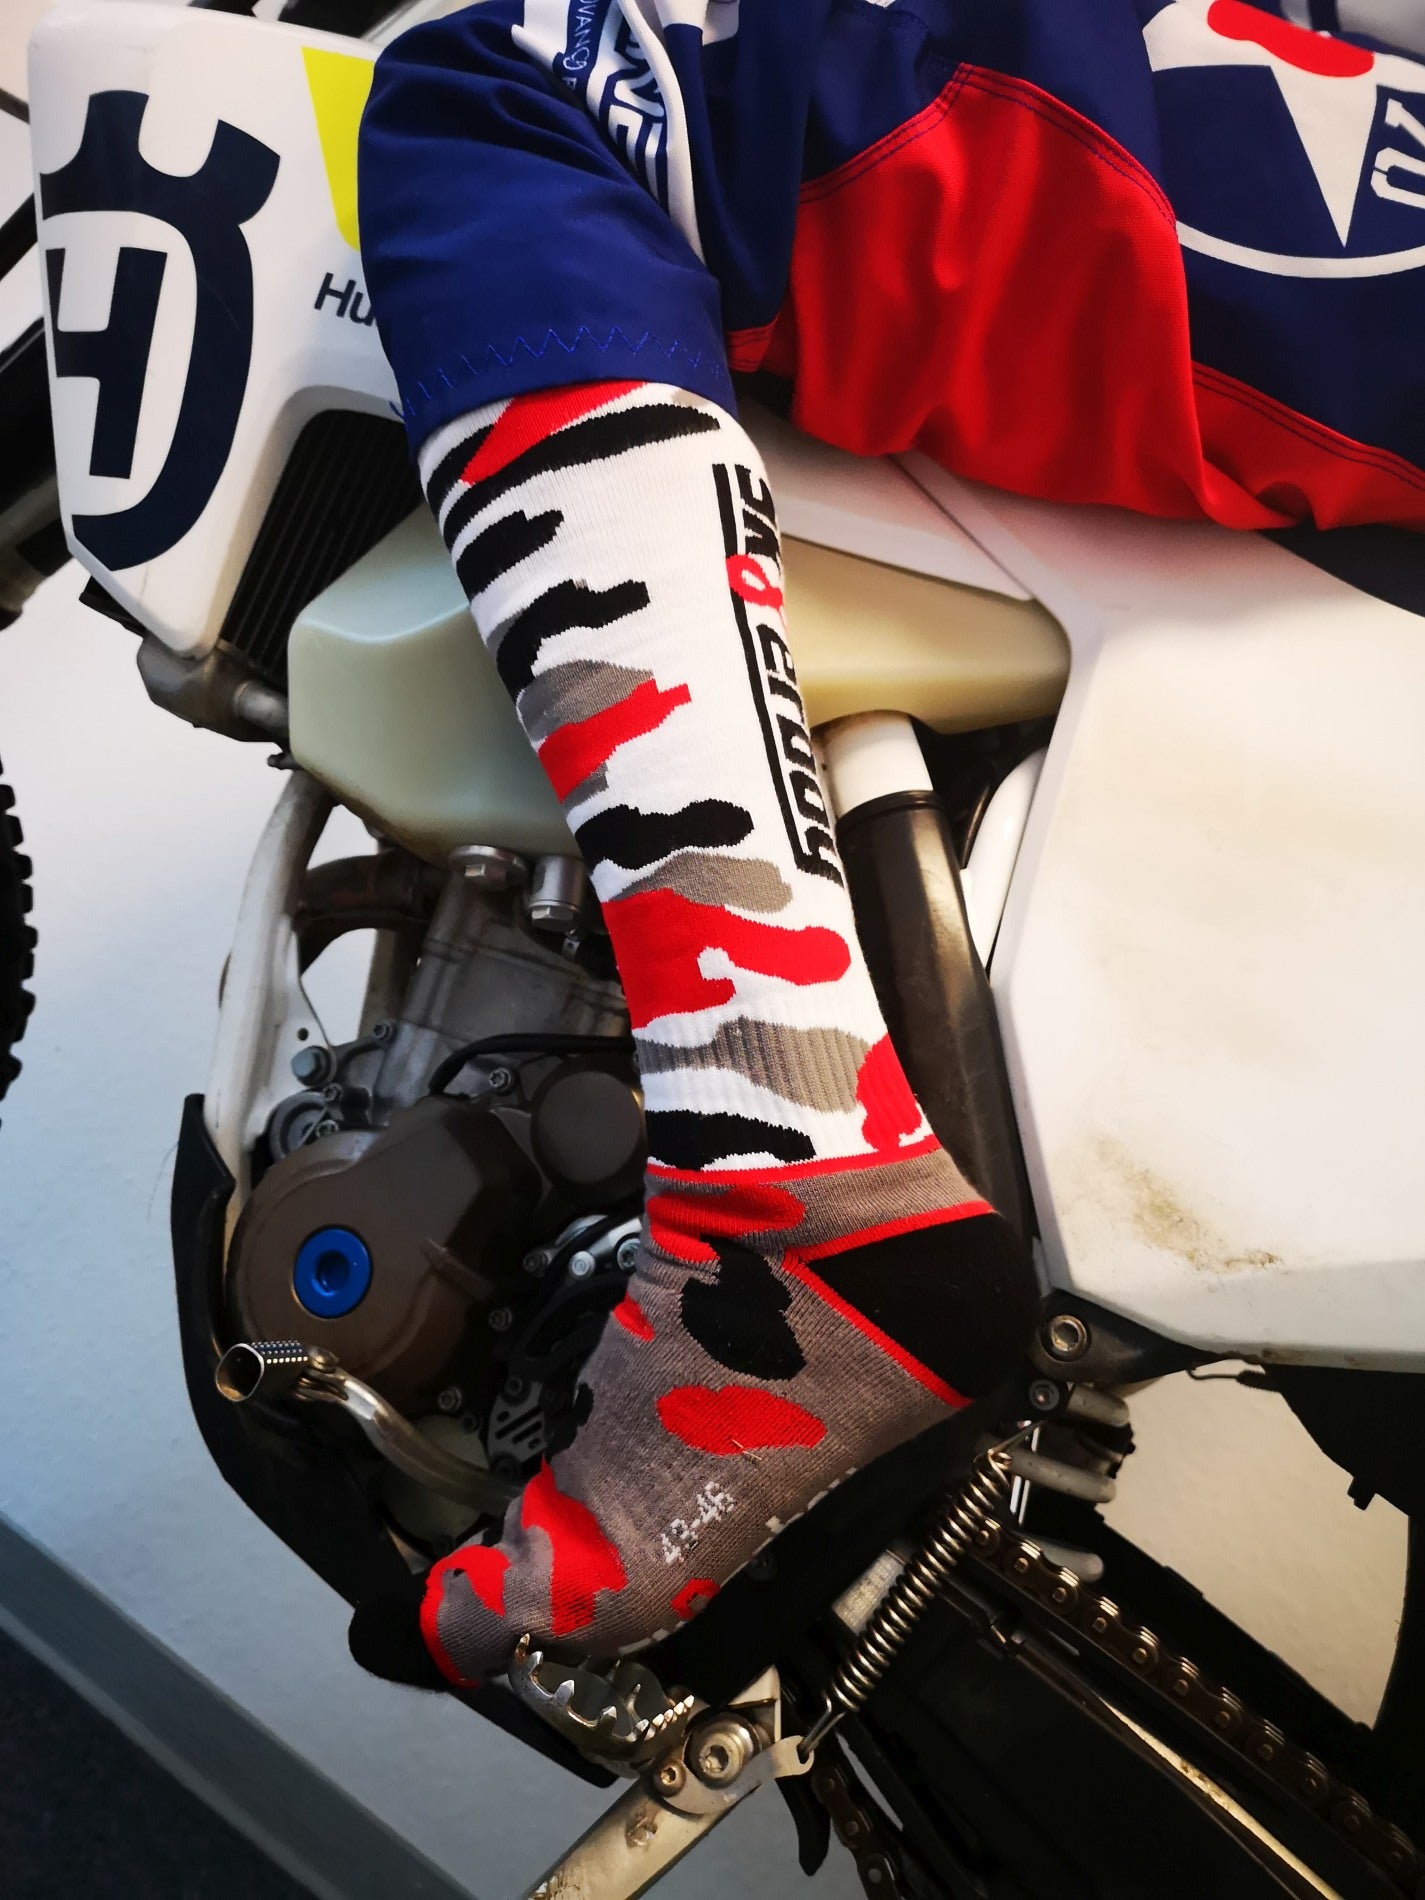 motorrad mit mx socks von sk8erboy in schwarz weiss rot grauem flecktarn muster mit großem logo auf sohle und rueckseite